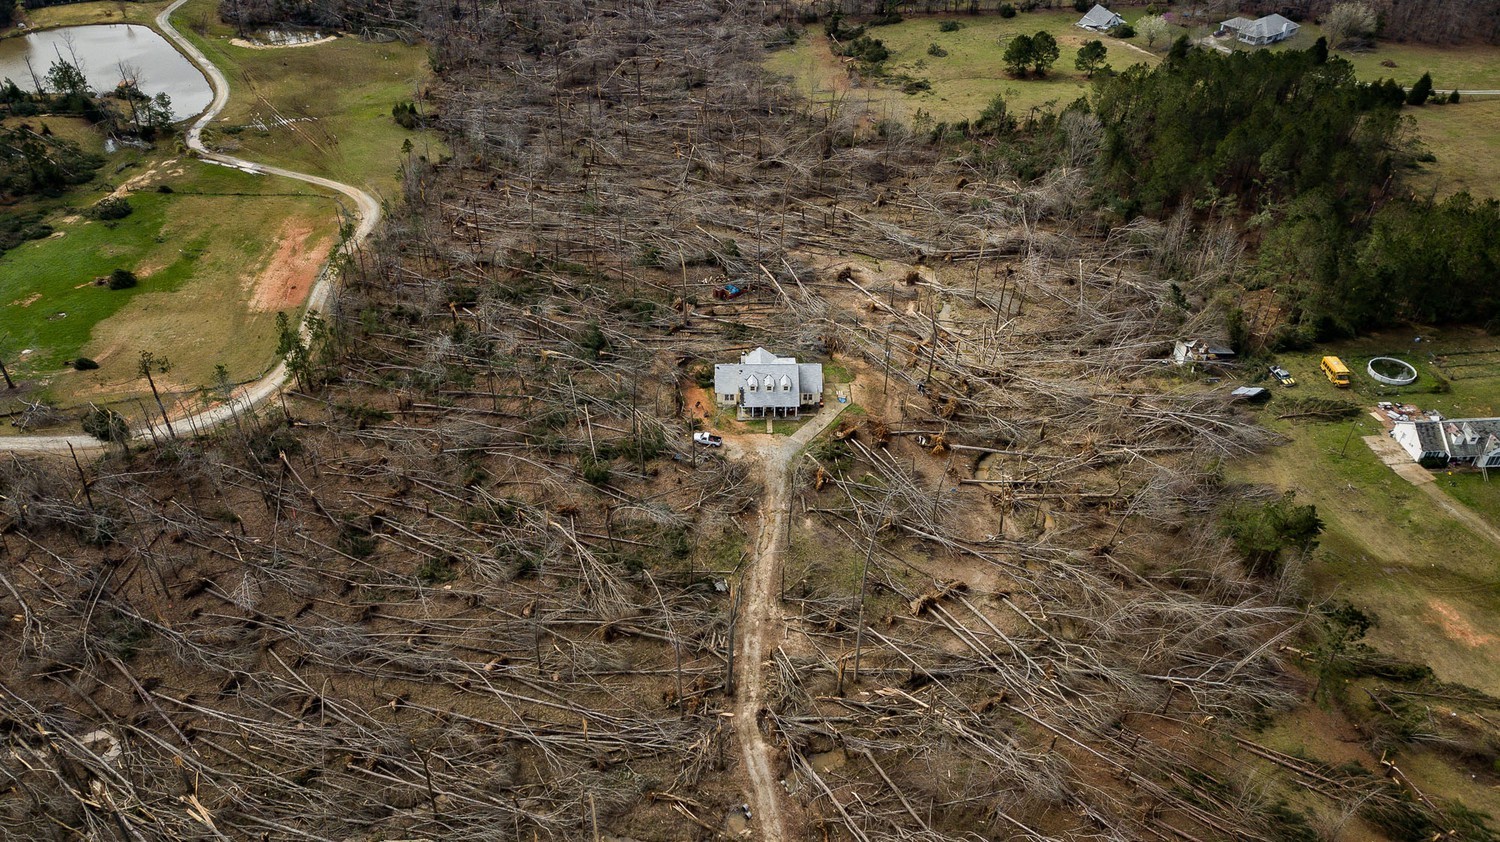 Финалист в категории Американский опыт, 2019. Дом среди упавших деревьев после торнадо в Джорджии. Автор Мэтт Гиллеспи